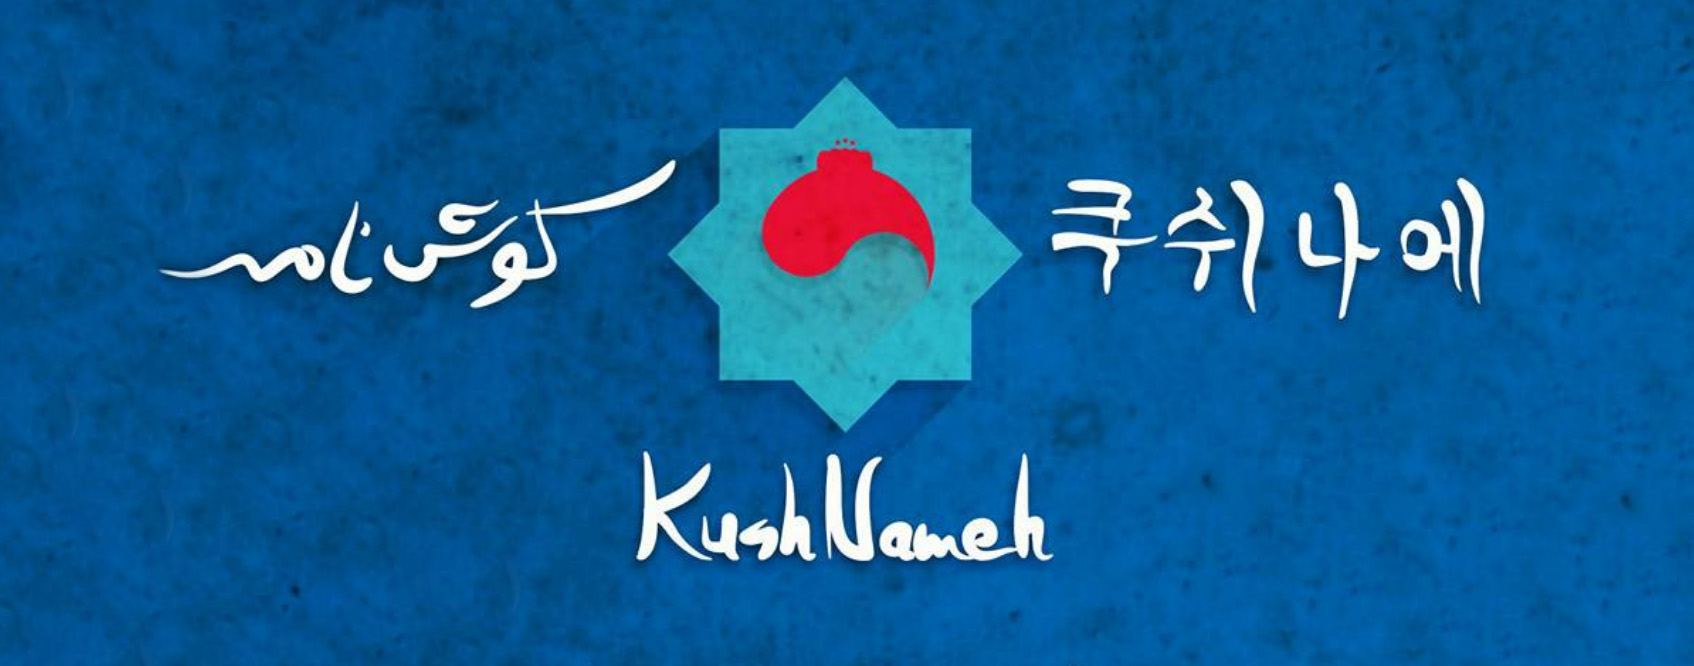 Kushnameh | Ancien épique persan et histoire d’amour